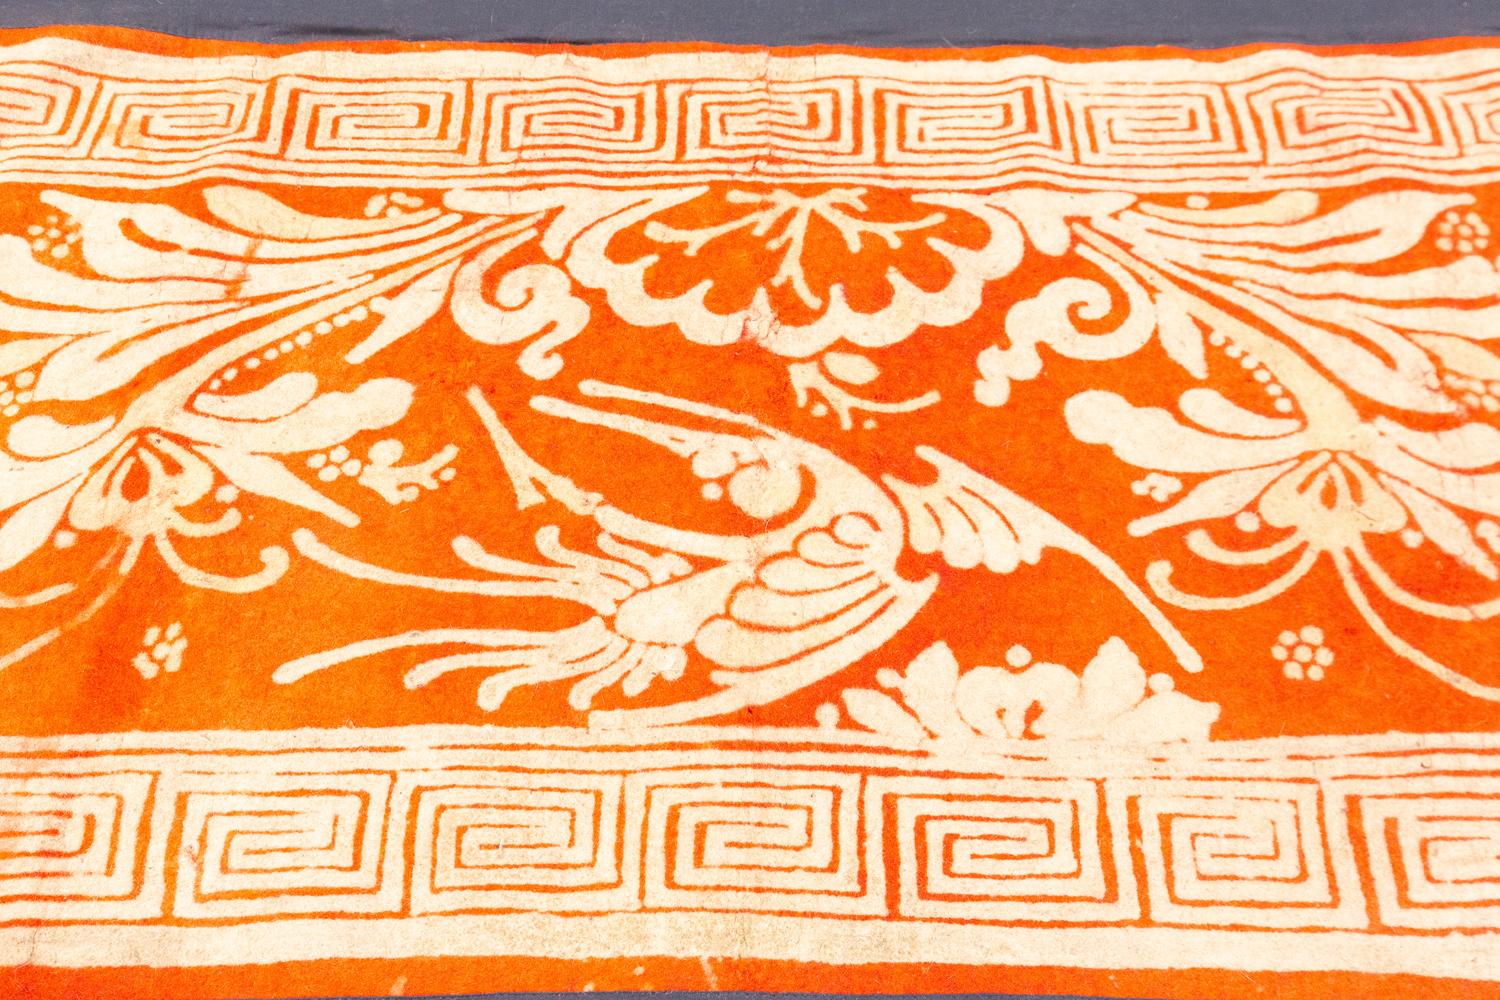 Il s'agit d'un ancien tapis tibétain en feutre tissé au XVIIIe siècle. Il mesure 154 x 89 cm. Il s'agit d'une pièce extrêmement rare qui a été montée sur un support noir pour la préserver. Son design s'articule autour d'un motif floral central avec